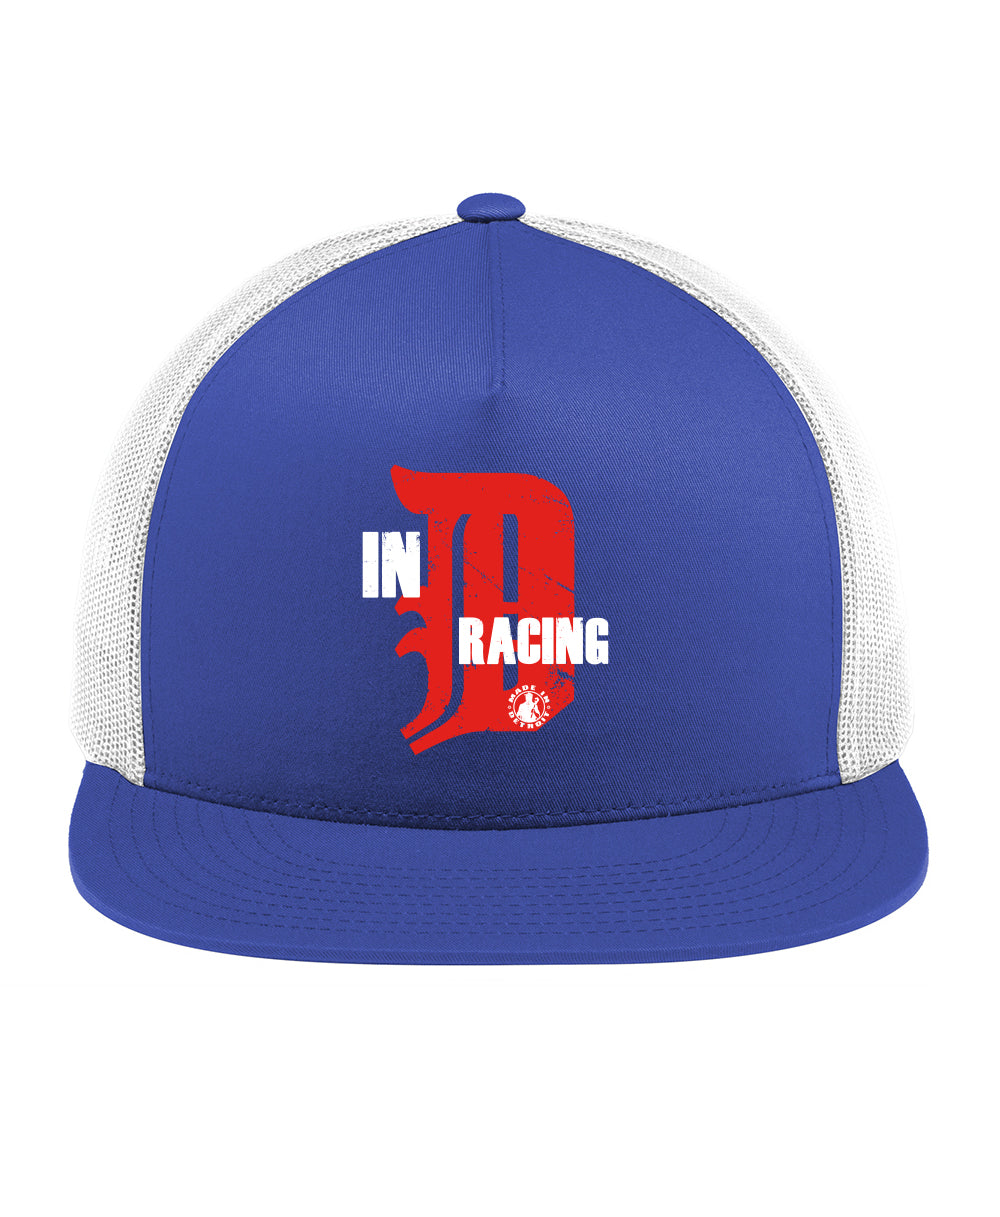 In-D Racing Hat